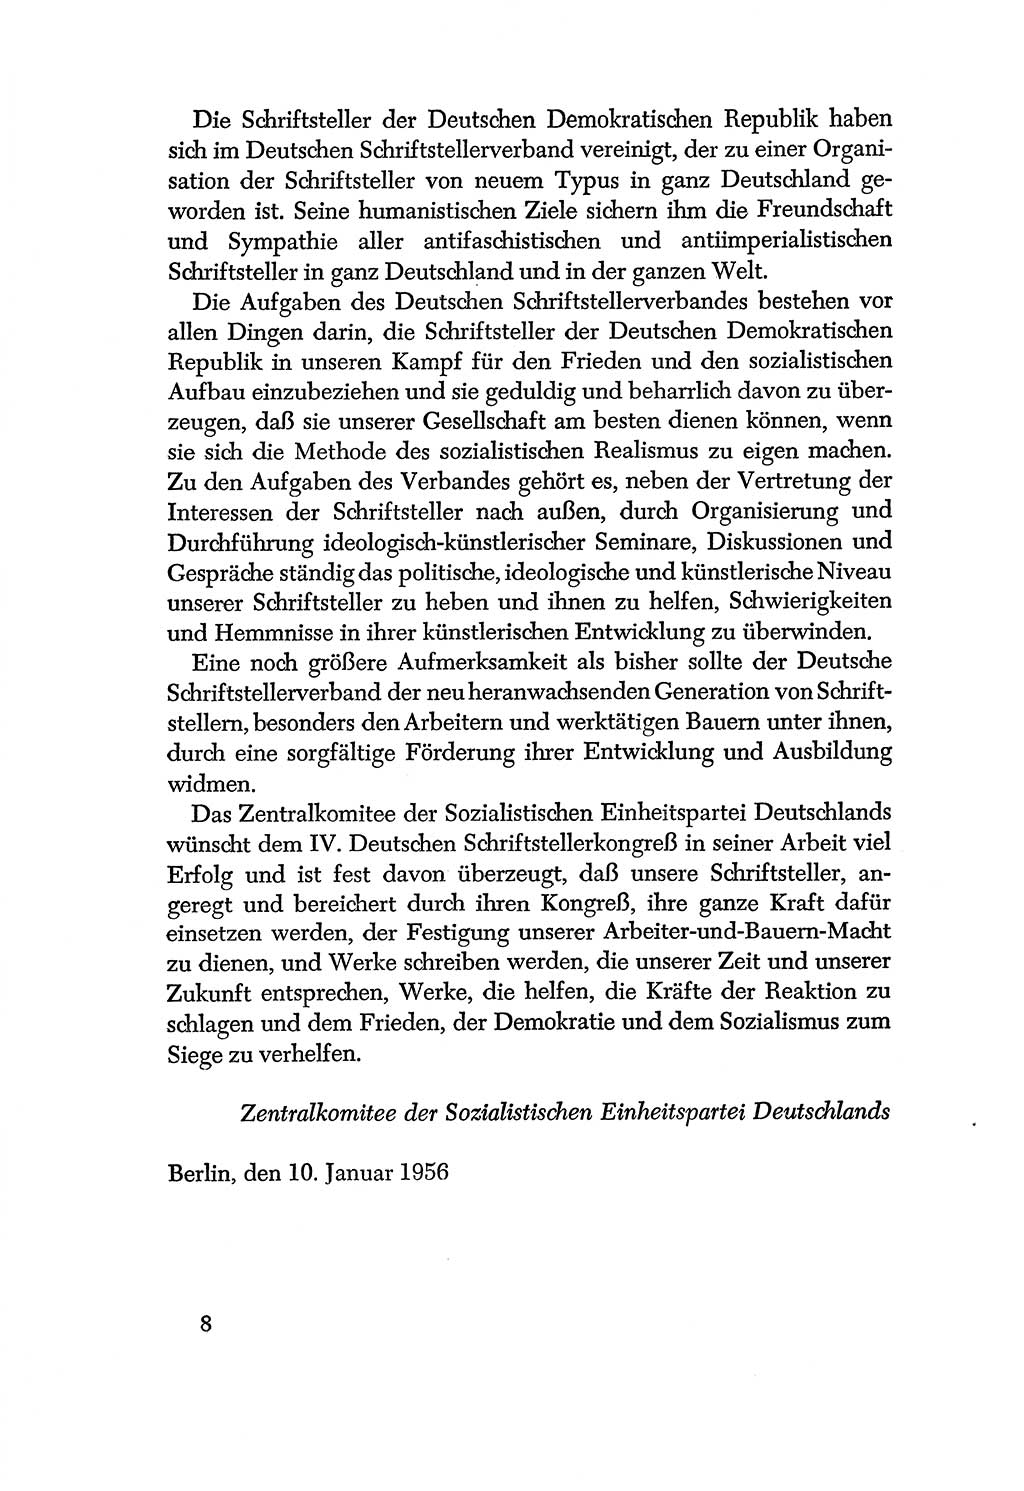 Dokumente der Sozialistischen Einheitspartei Deutschlands (SED) [Deutsche Demokratische Republik (DDR)] 1956-1957, Seite 8 (Dok. SED DDR 1956-1957, S. 8)